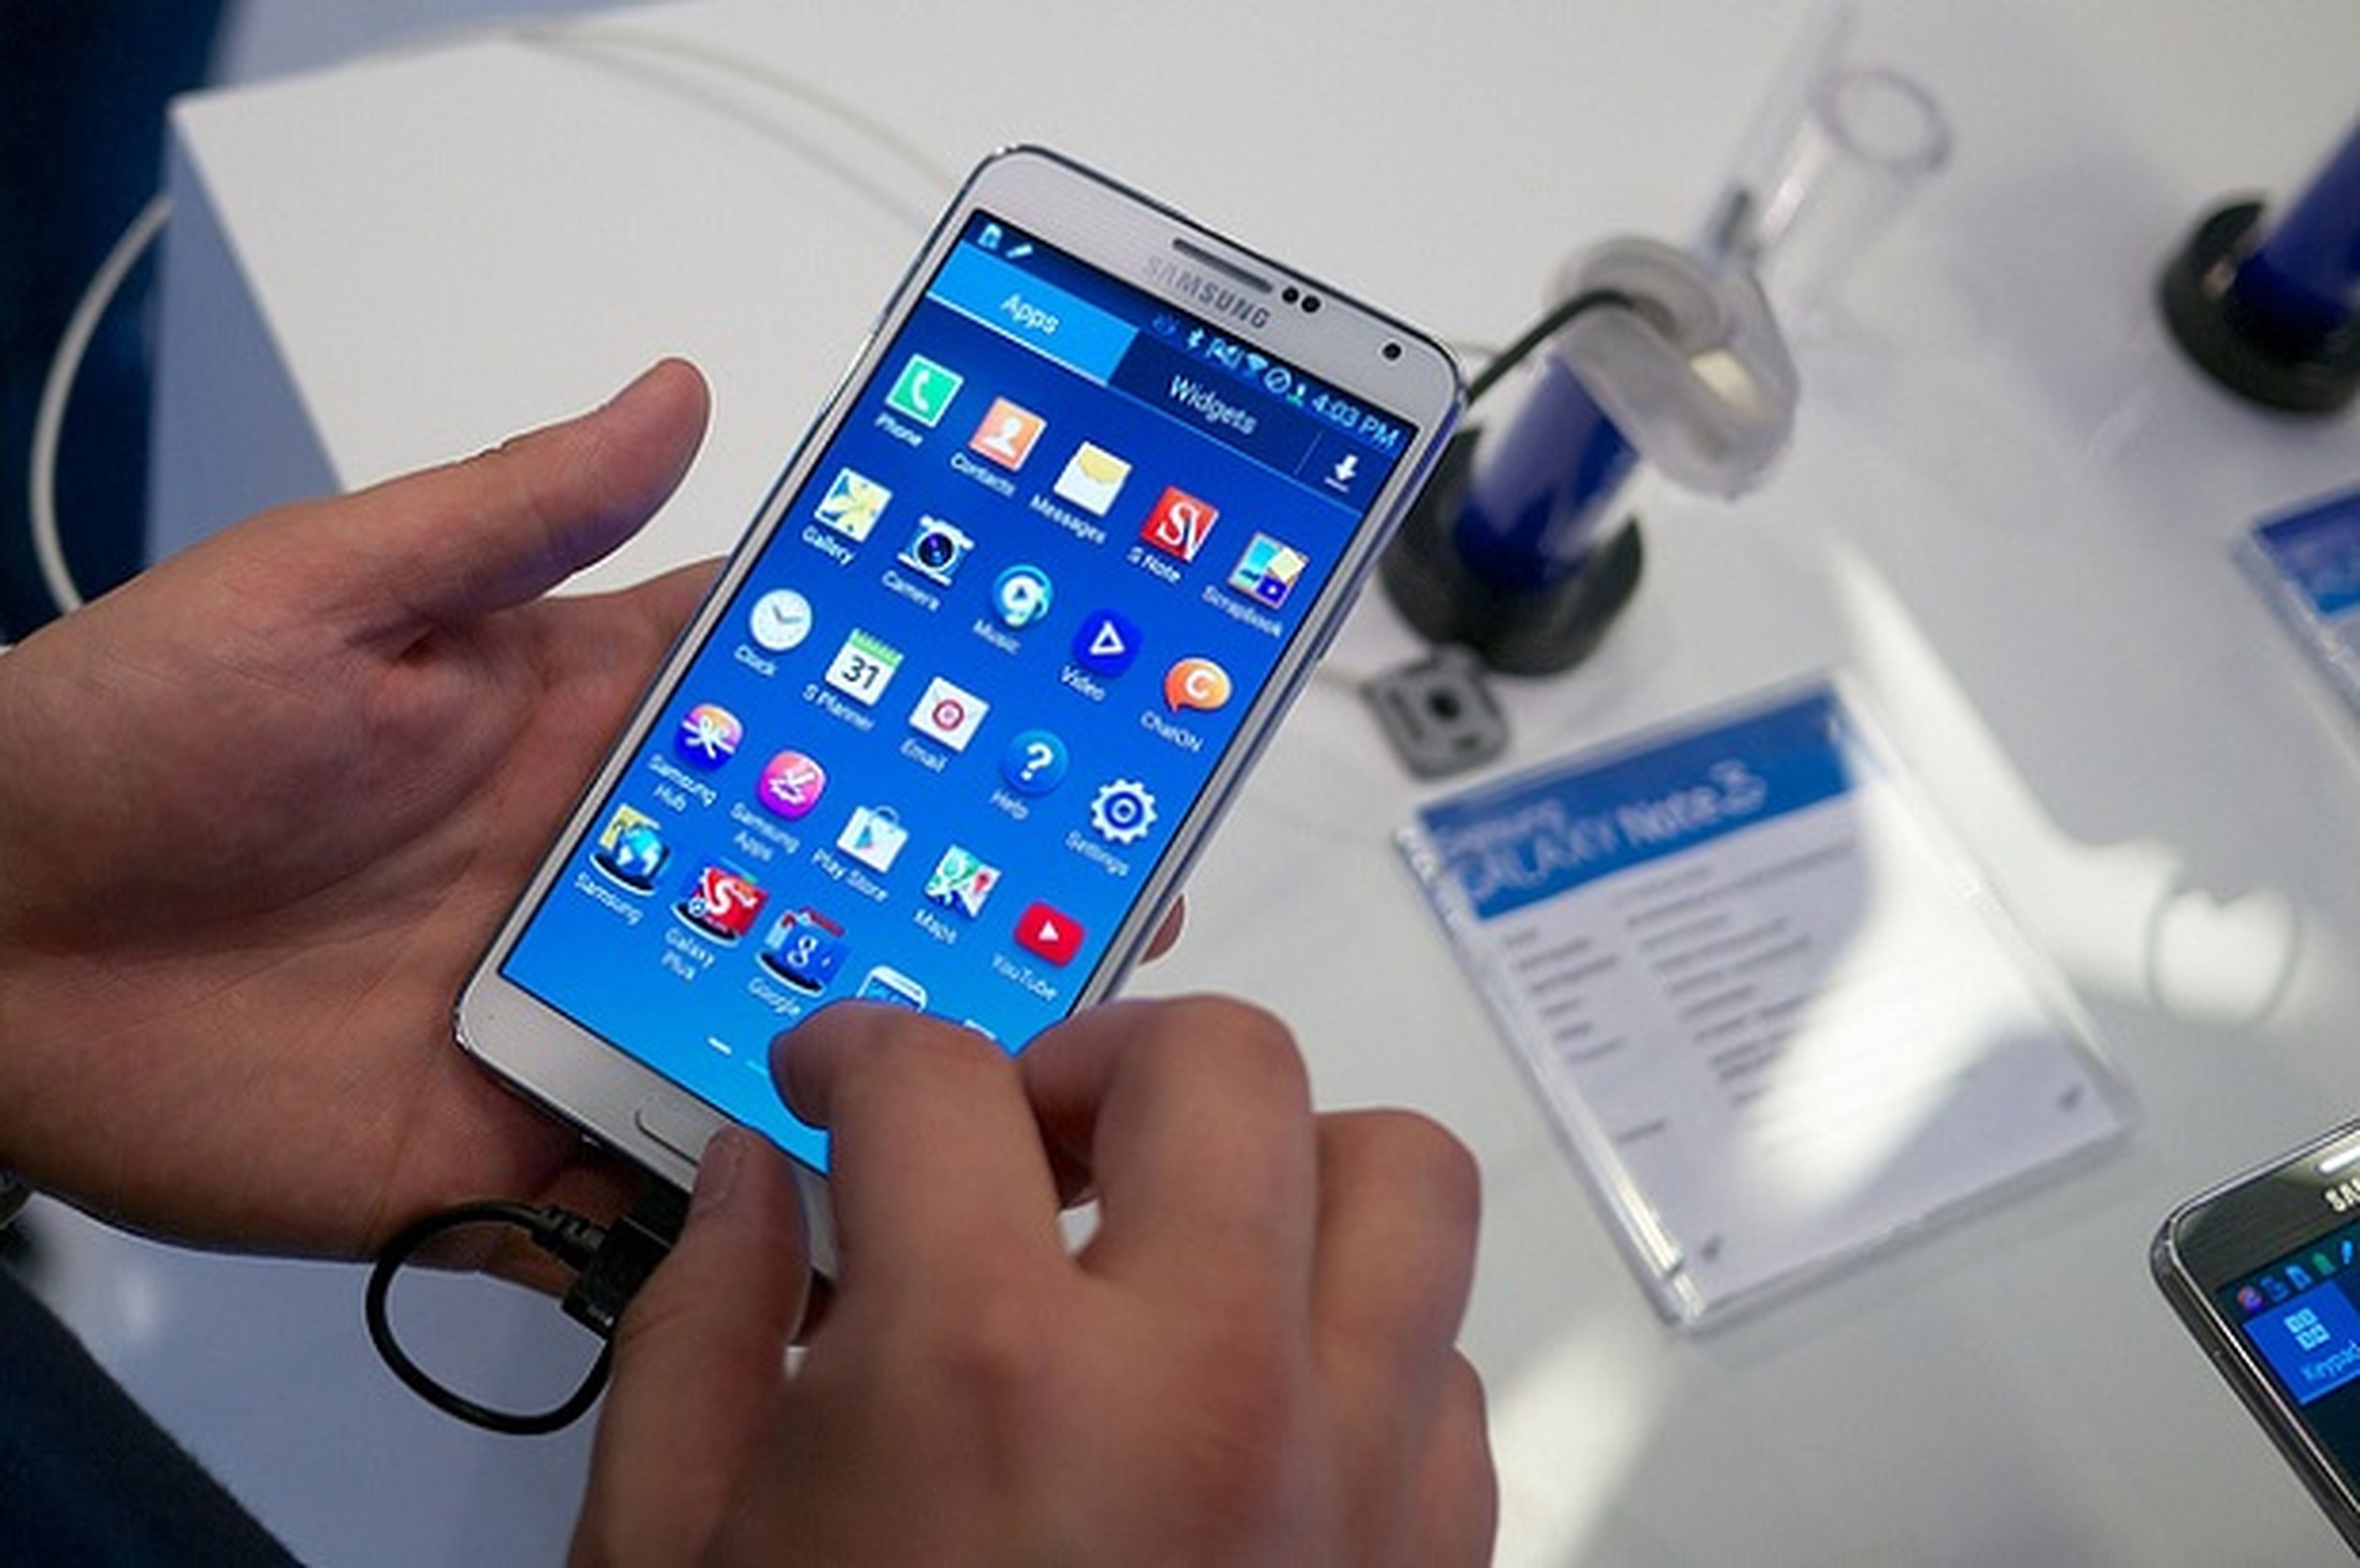 Samsung responde a los resultados en benchmark del Note 3